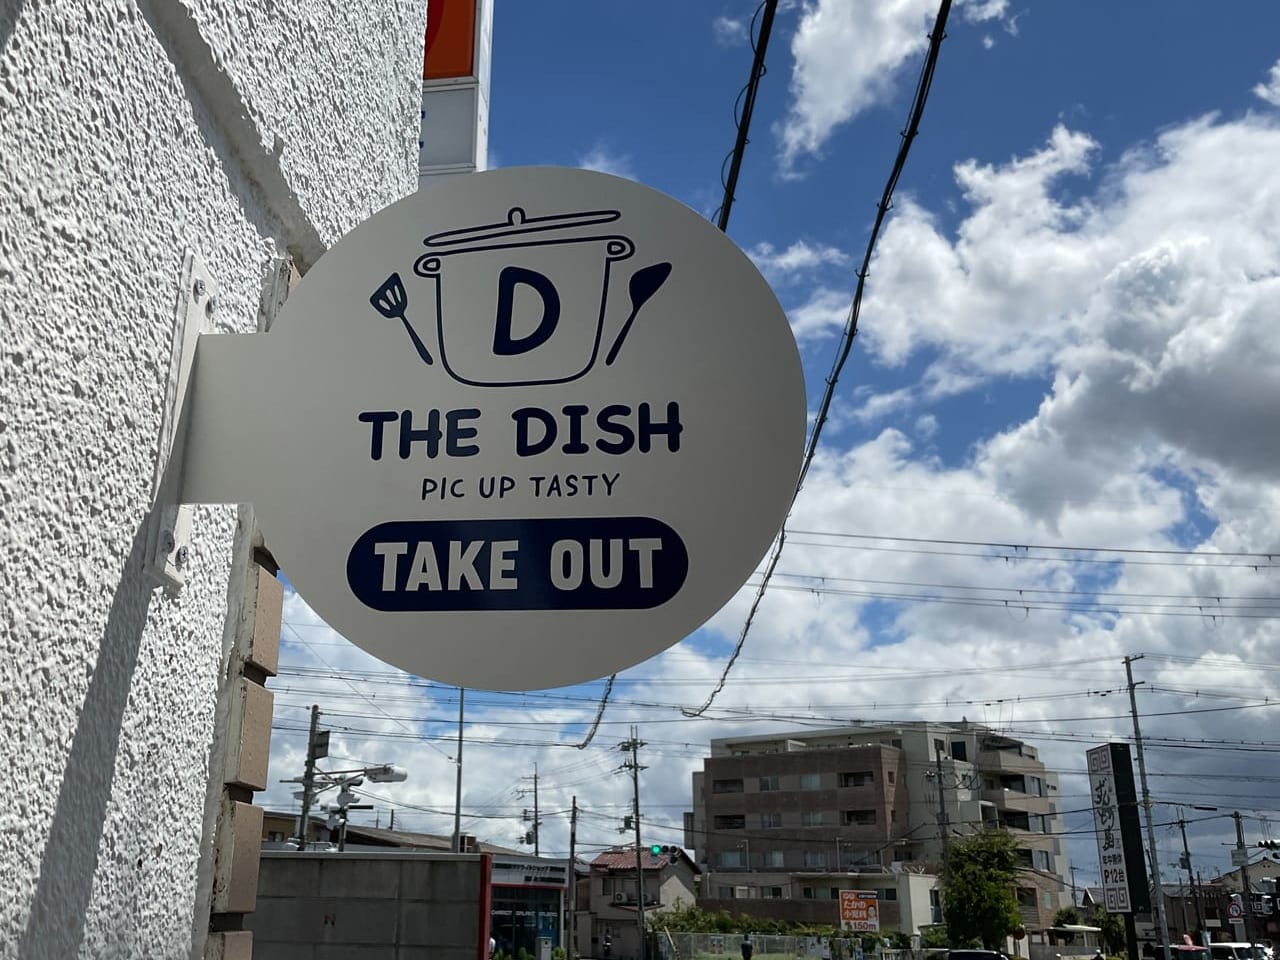 THE DISH